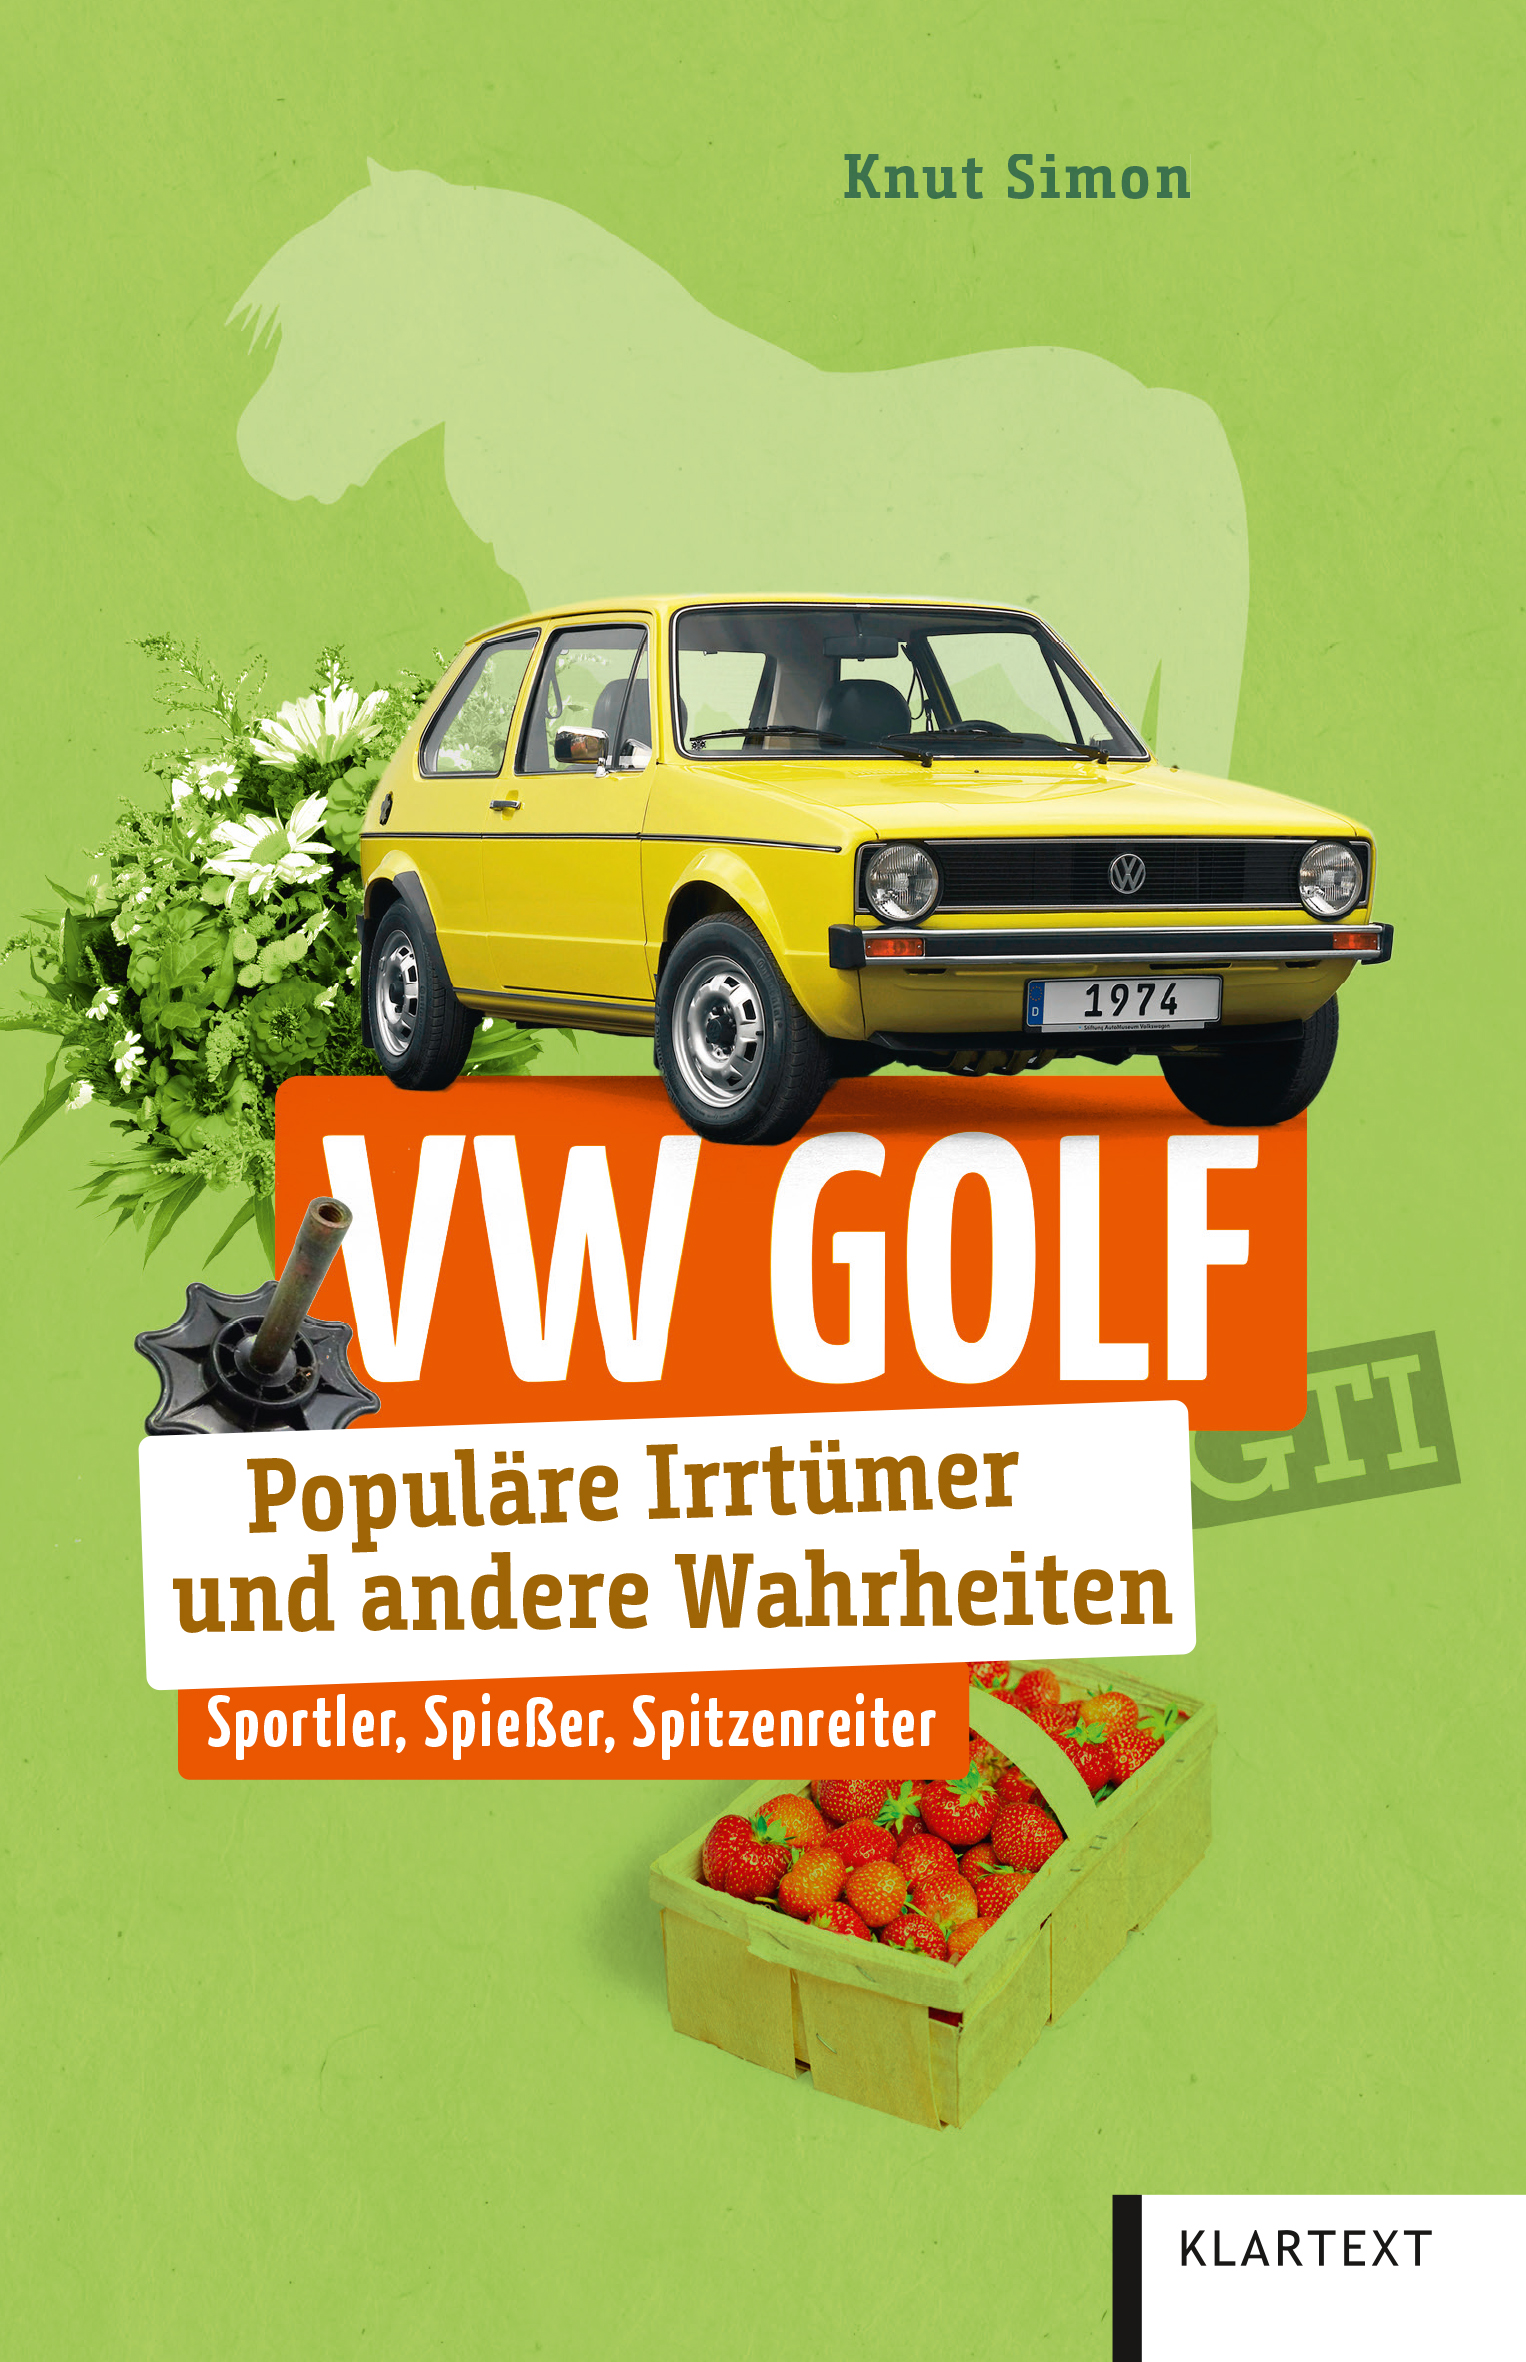 Das Bild zeigt das Cover des Buchs "VW Golf - Populäre Irrtümer und andere Wahrheiten" von Knut Simon.